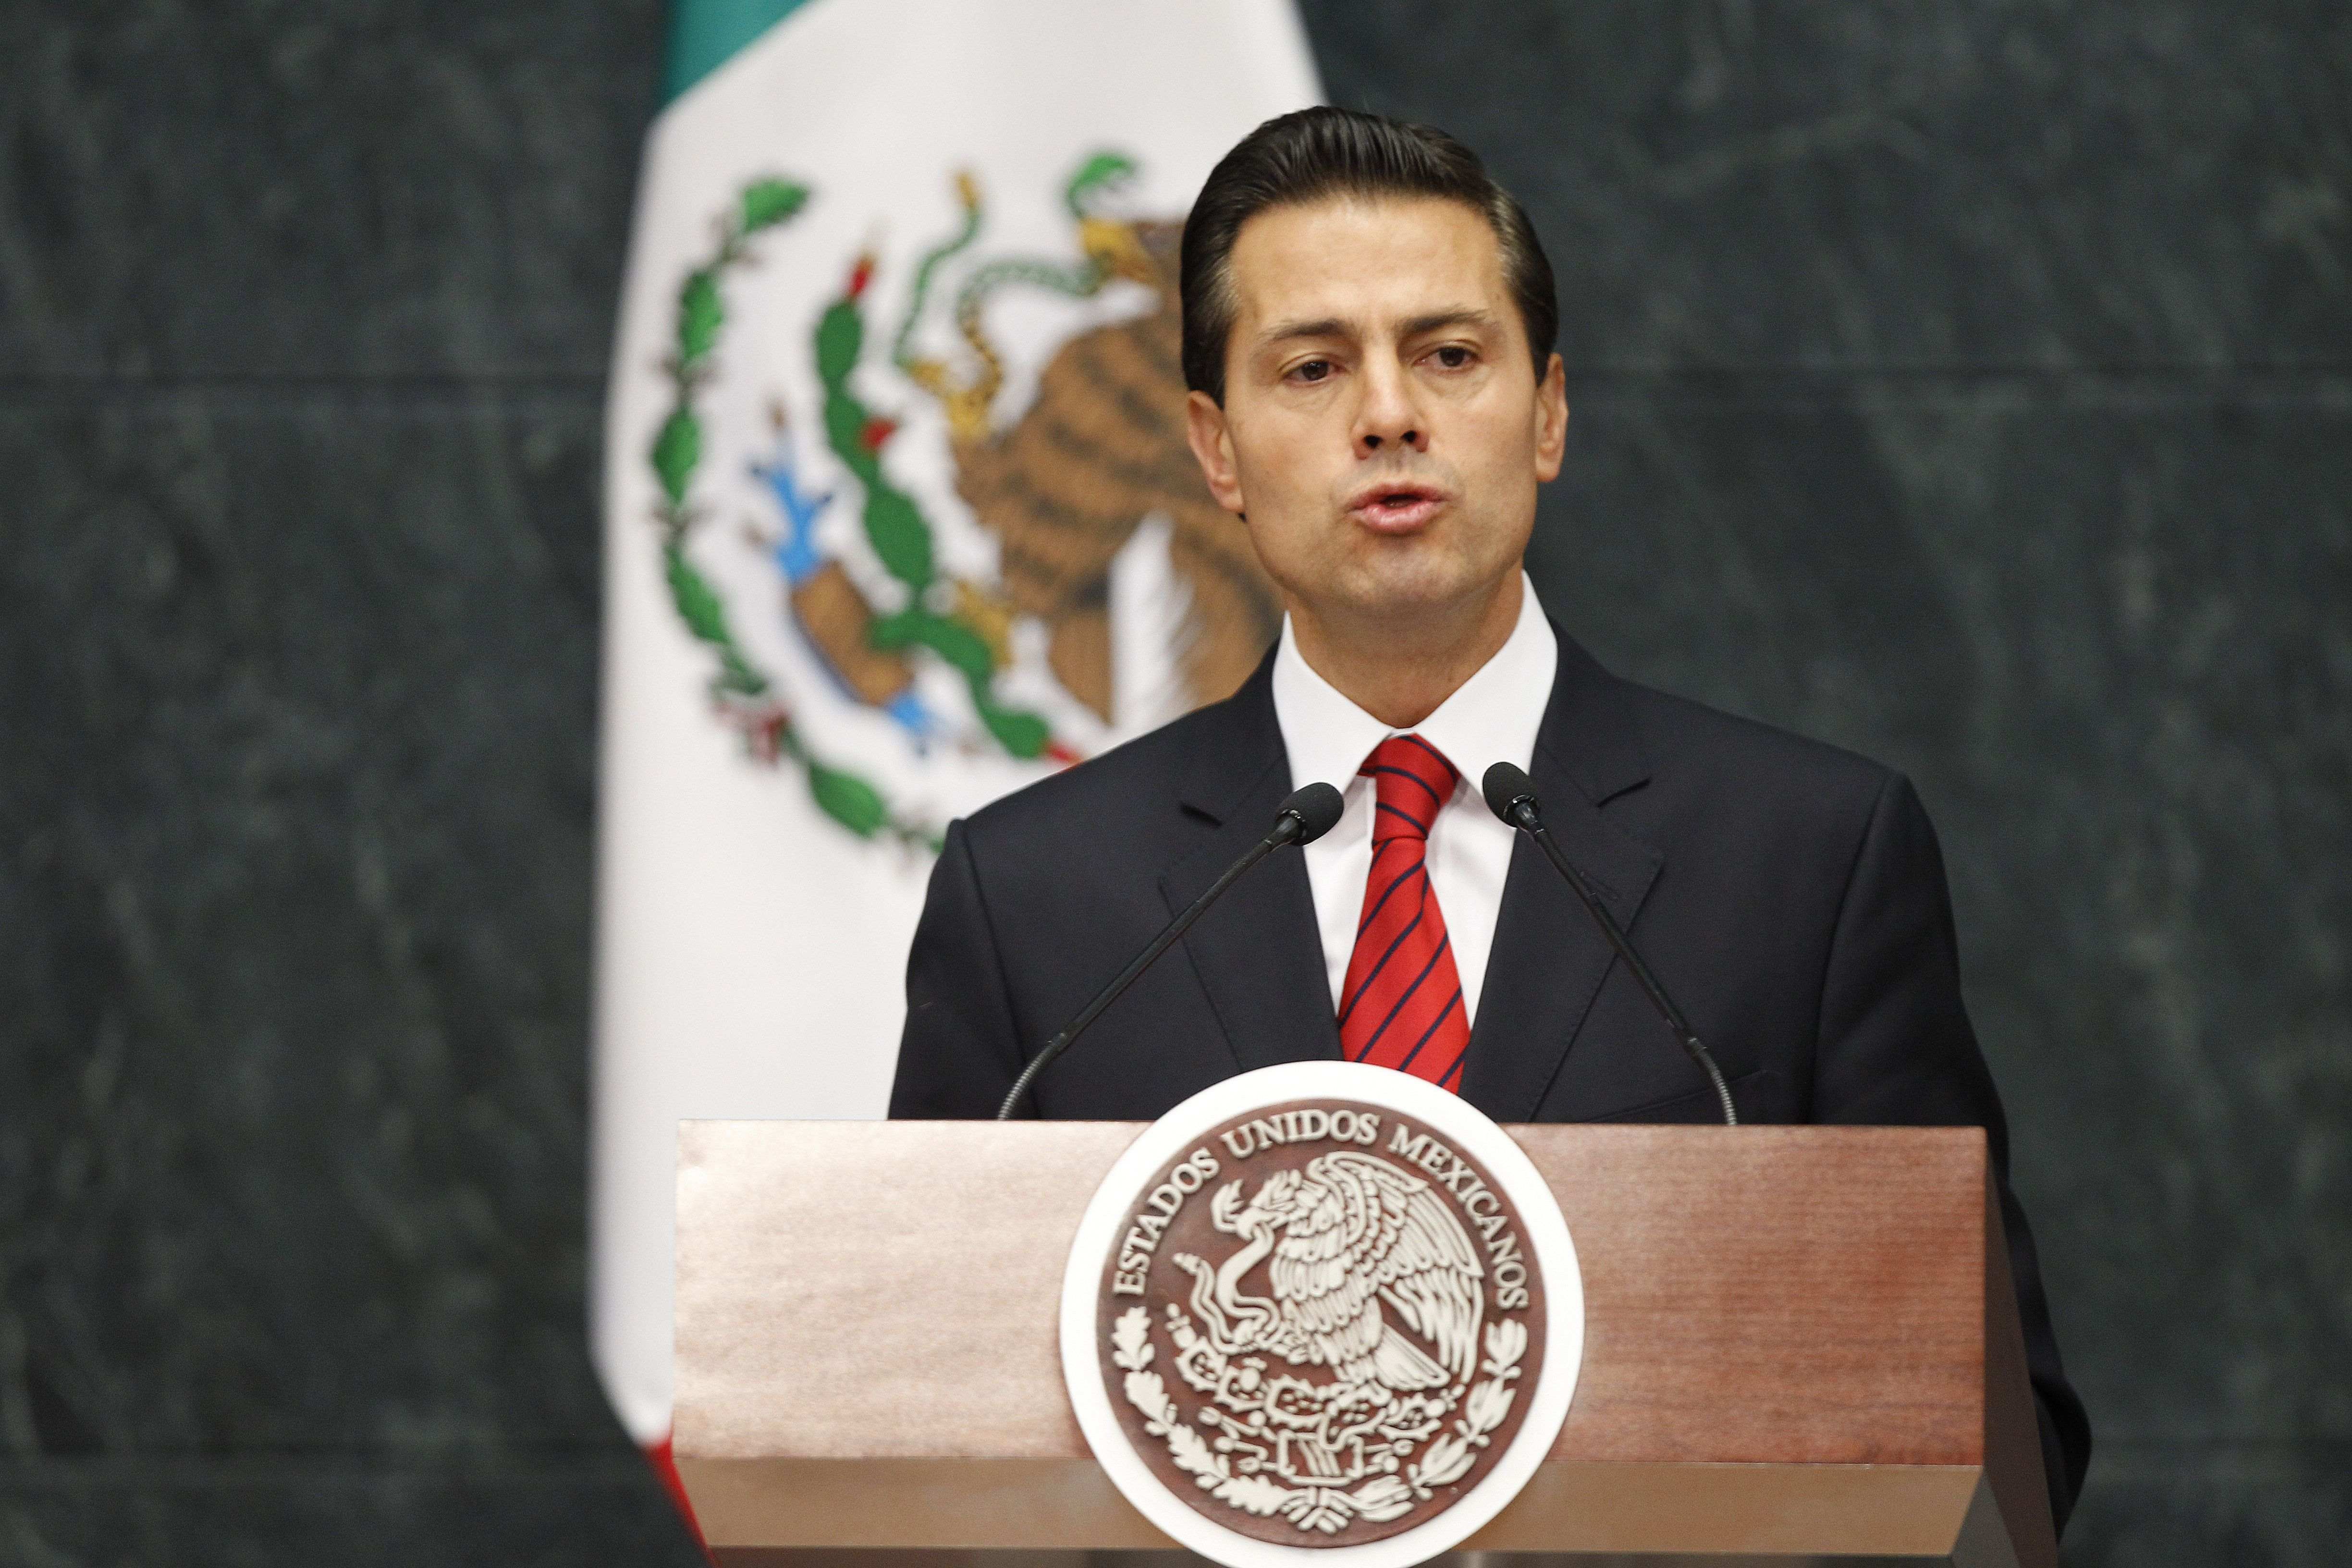 El Govern mexicà "crida a la calma" després de la victòria de Trump